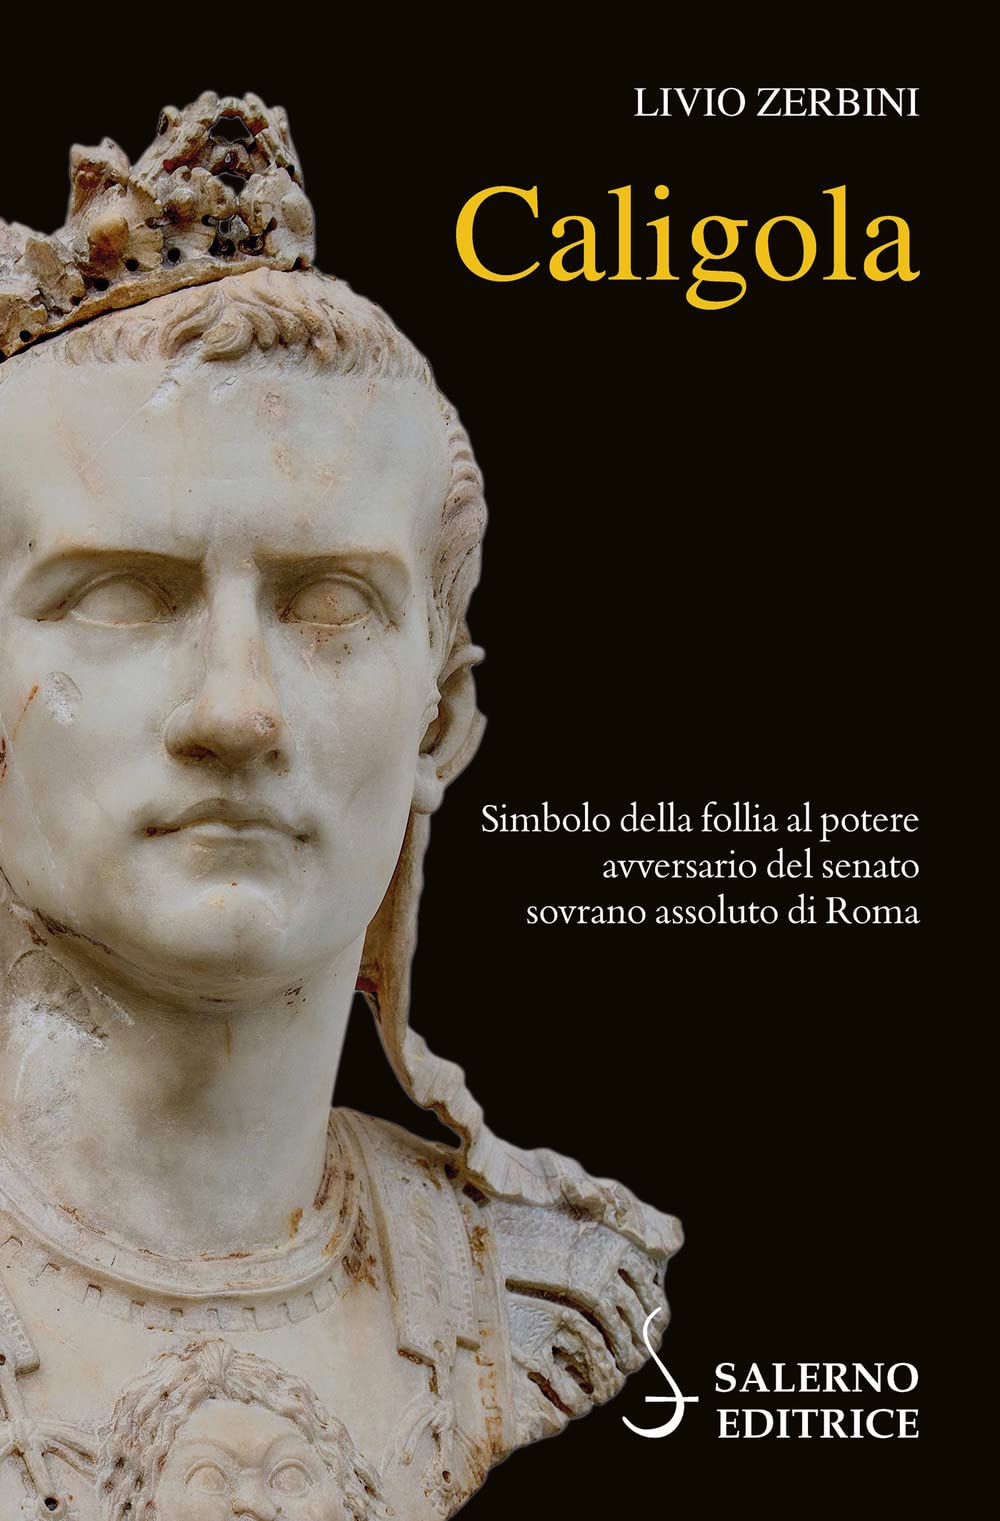 Libri Livio Zerbini - Caligola NUOVO SIGILLATO, EDIZIONE DEL 13/01/2023 SUBITO DISPONIBILE